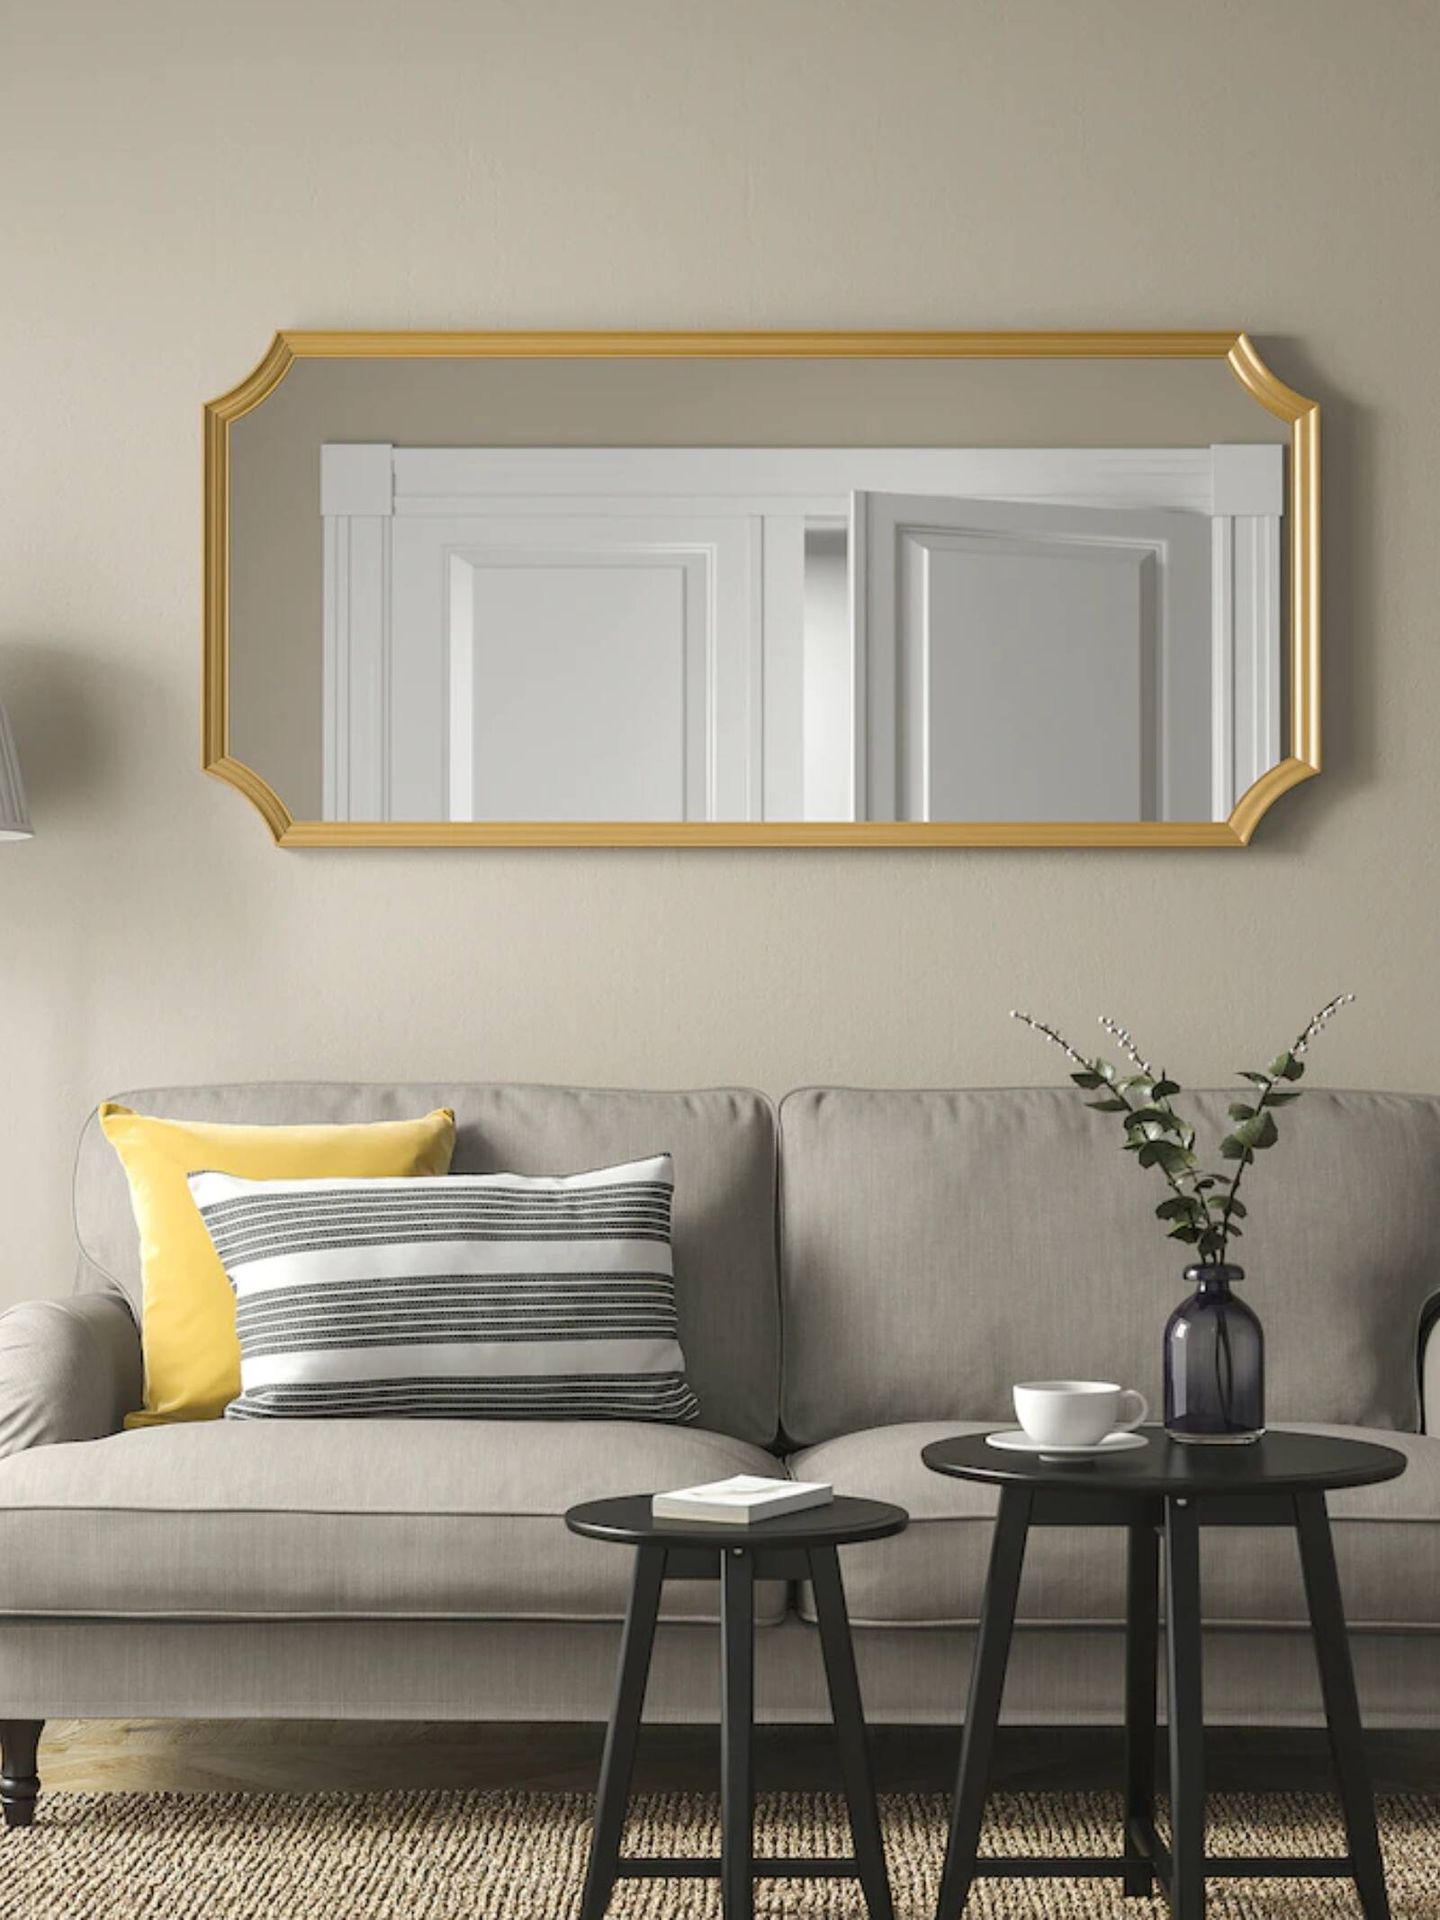 Los nuevos espejos de Ikea para tu salón o dormitorio. (Cortesía)